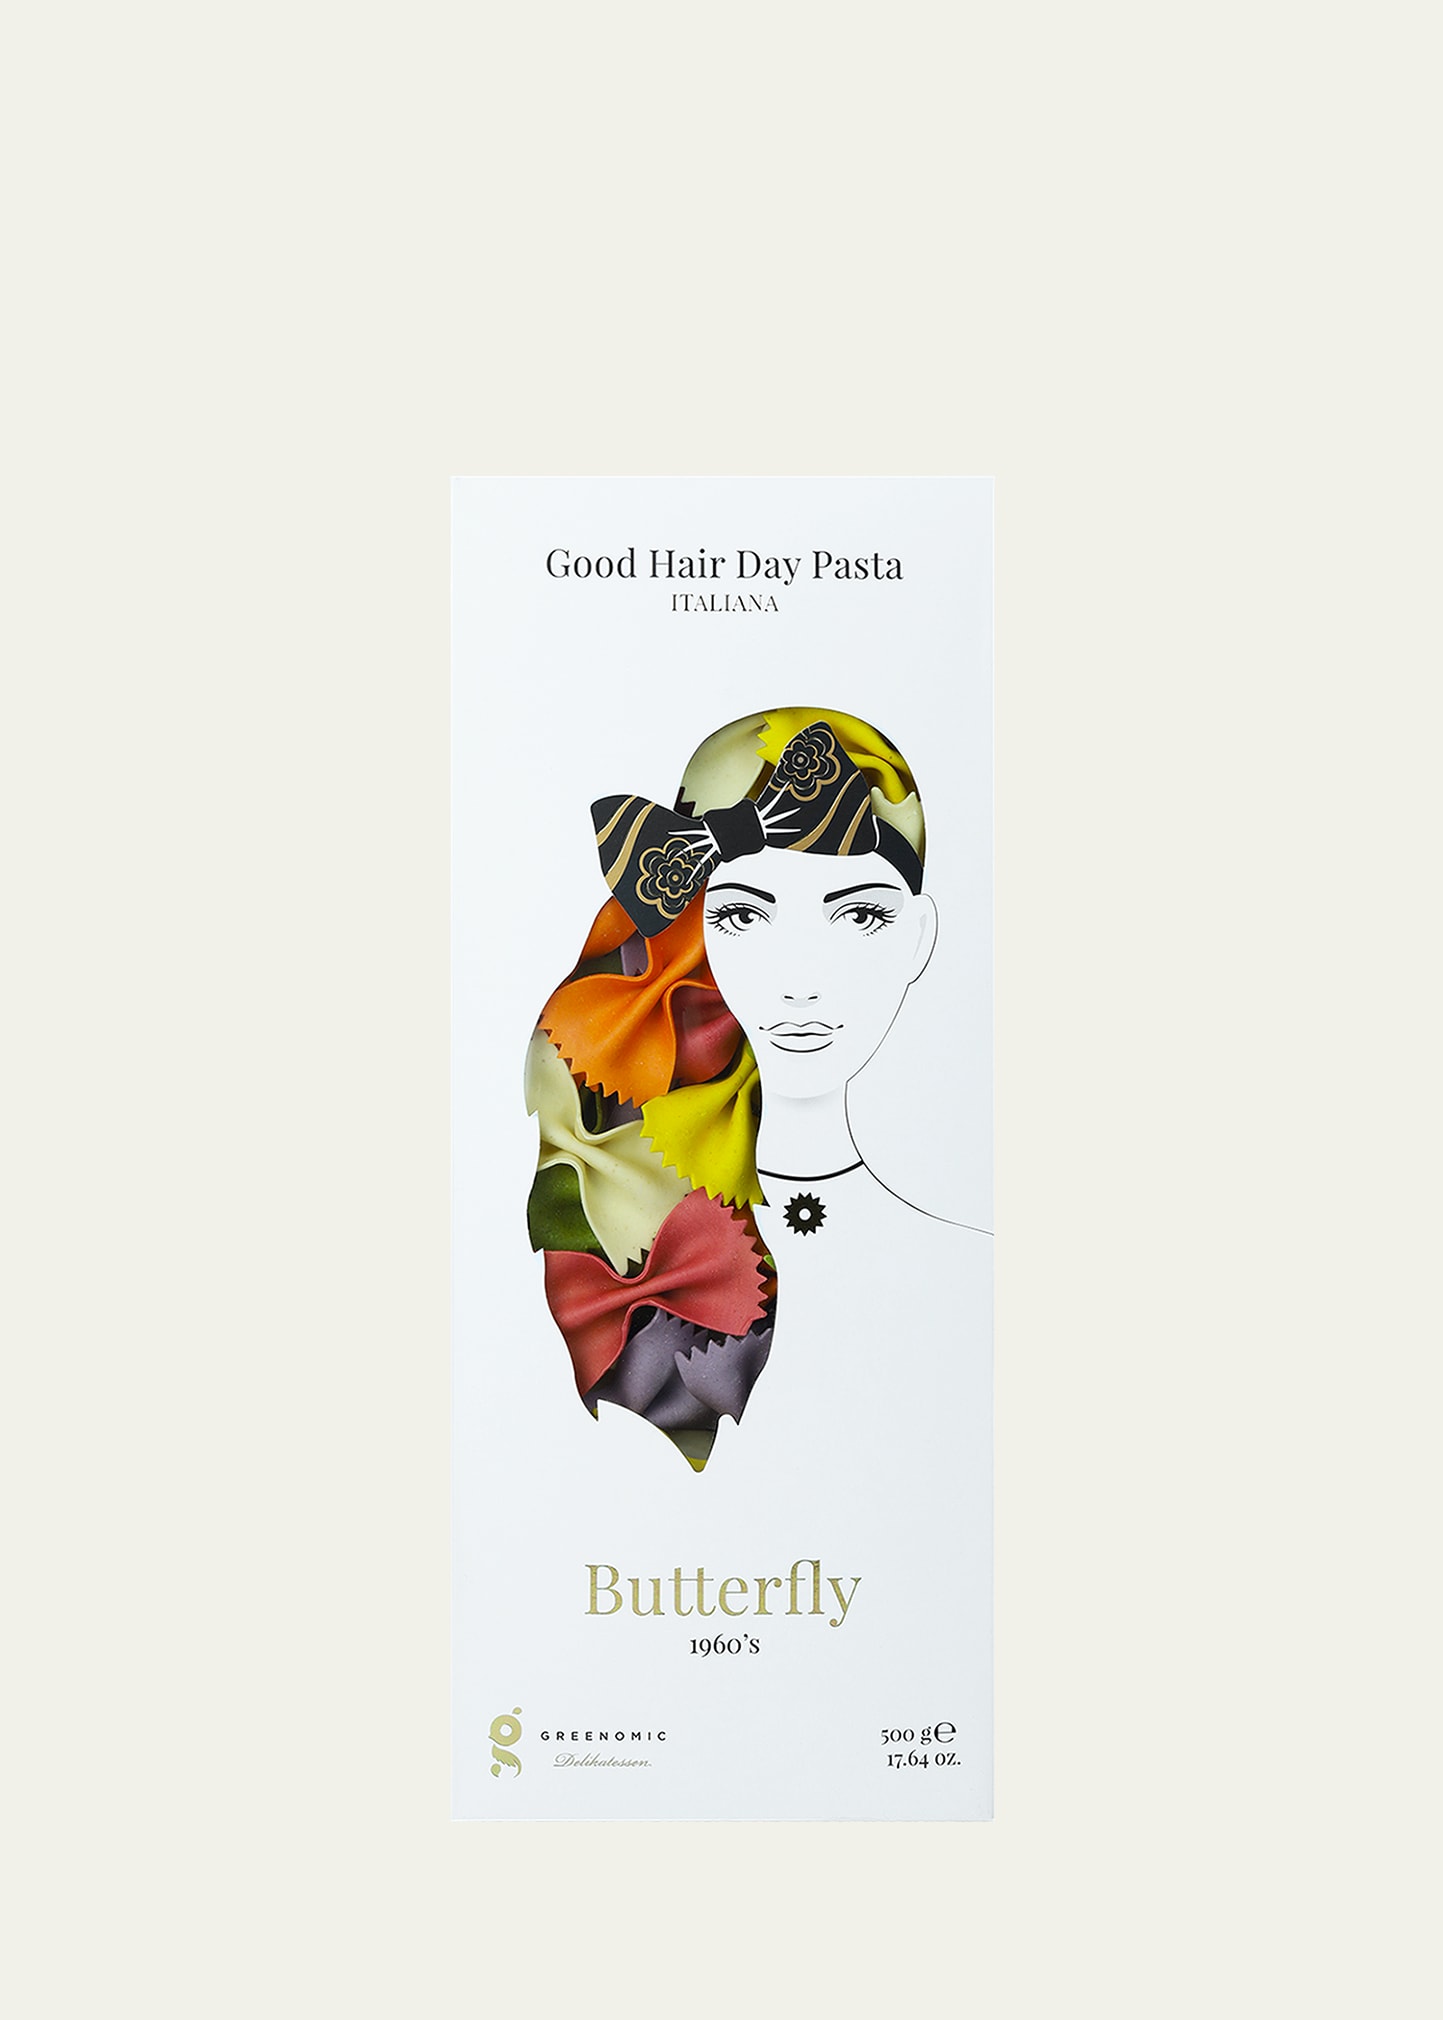 Butterfly 1960s Italian Pasta